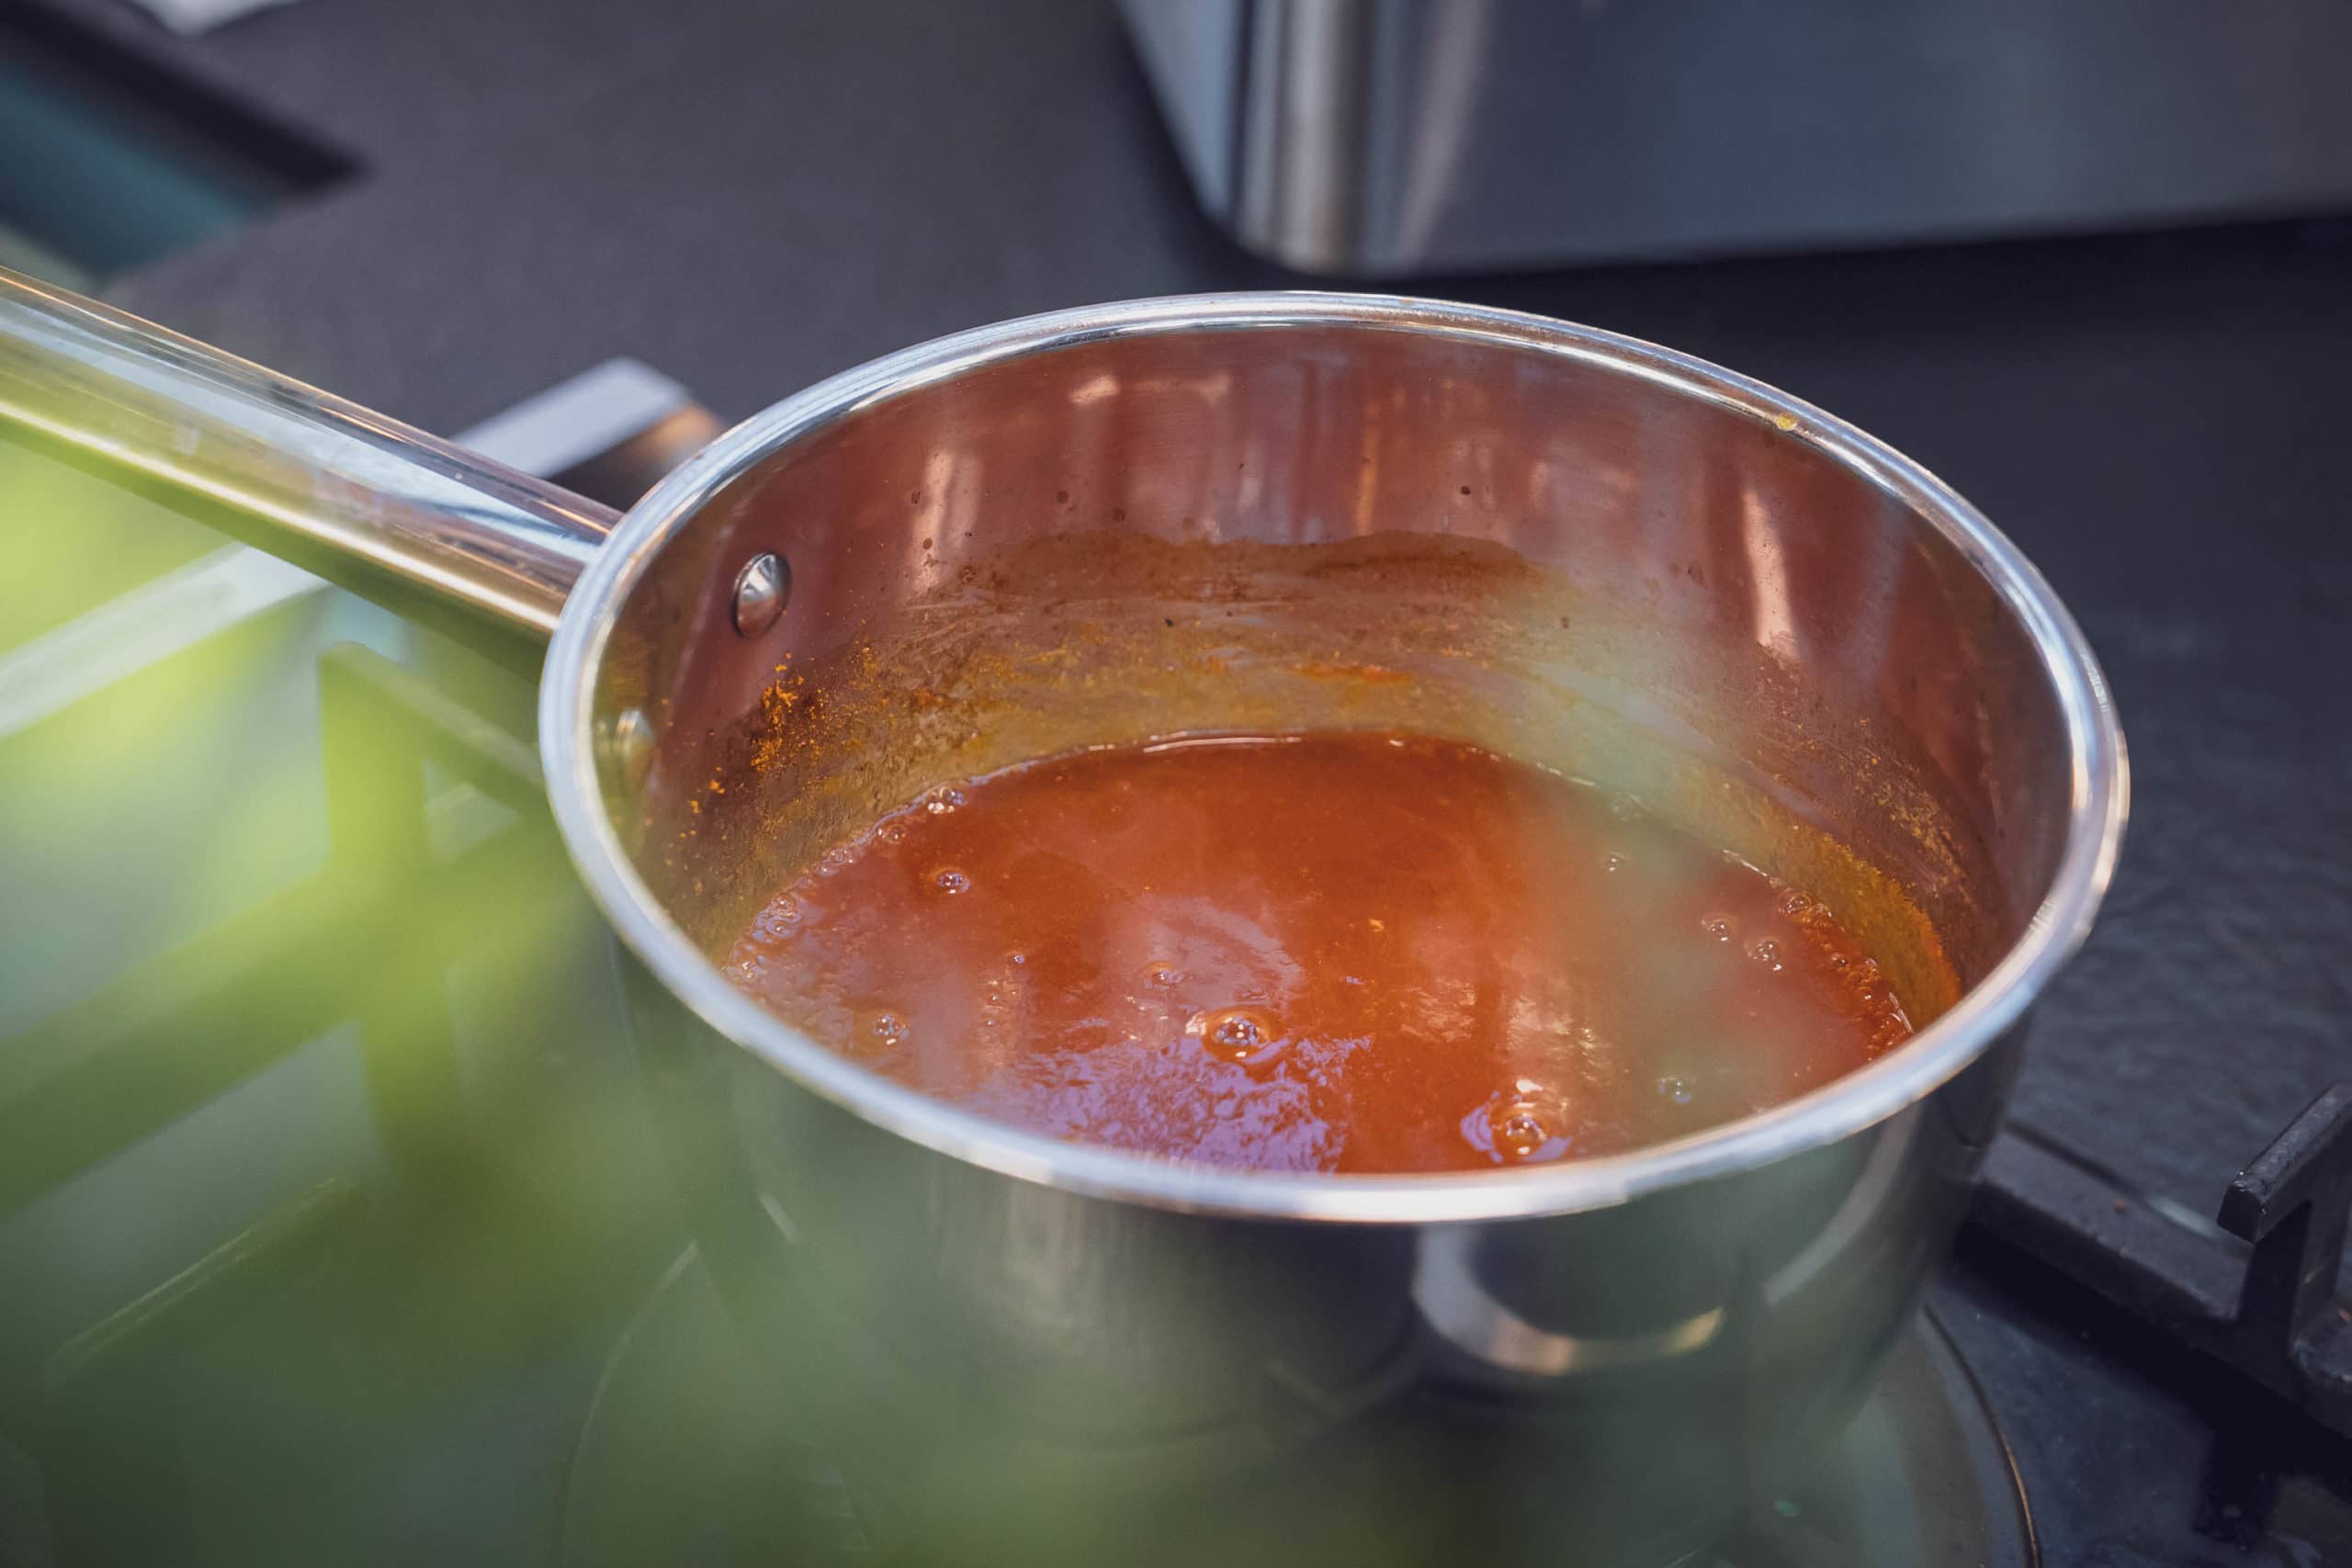 Sauce für das Currywurst Rezept auf dem Kochfeld